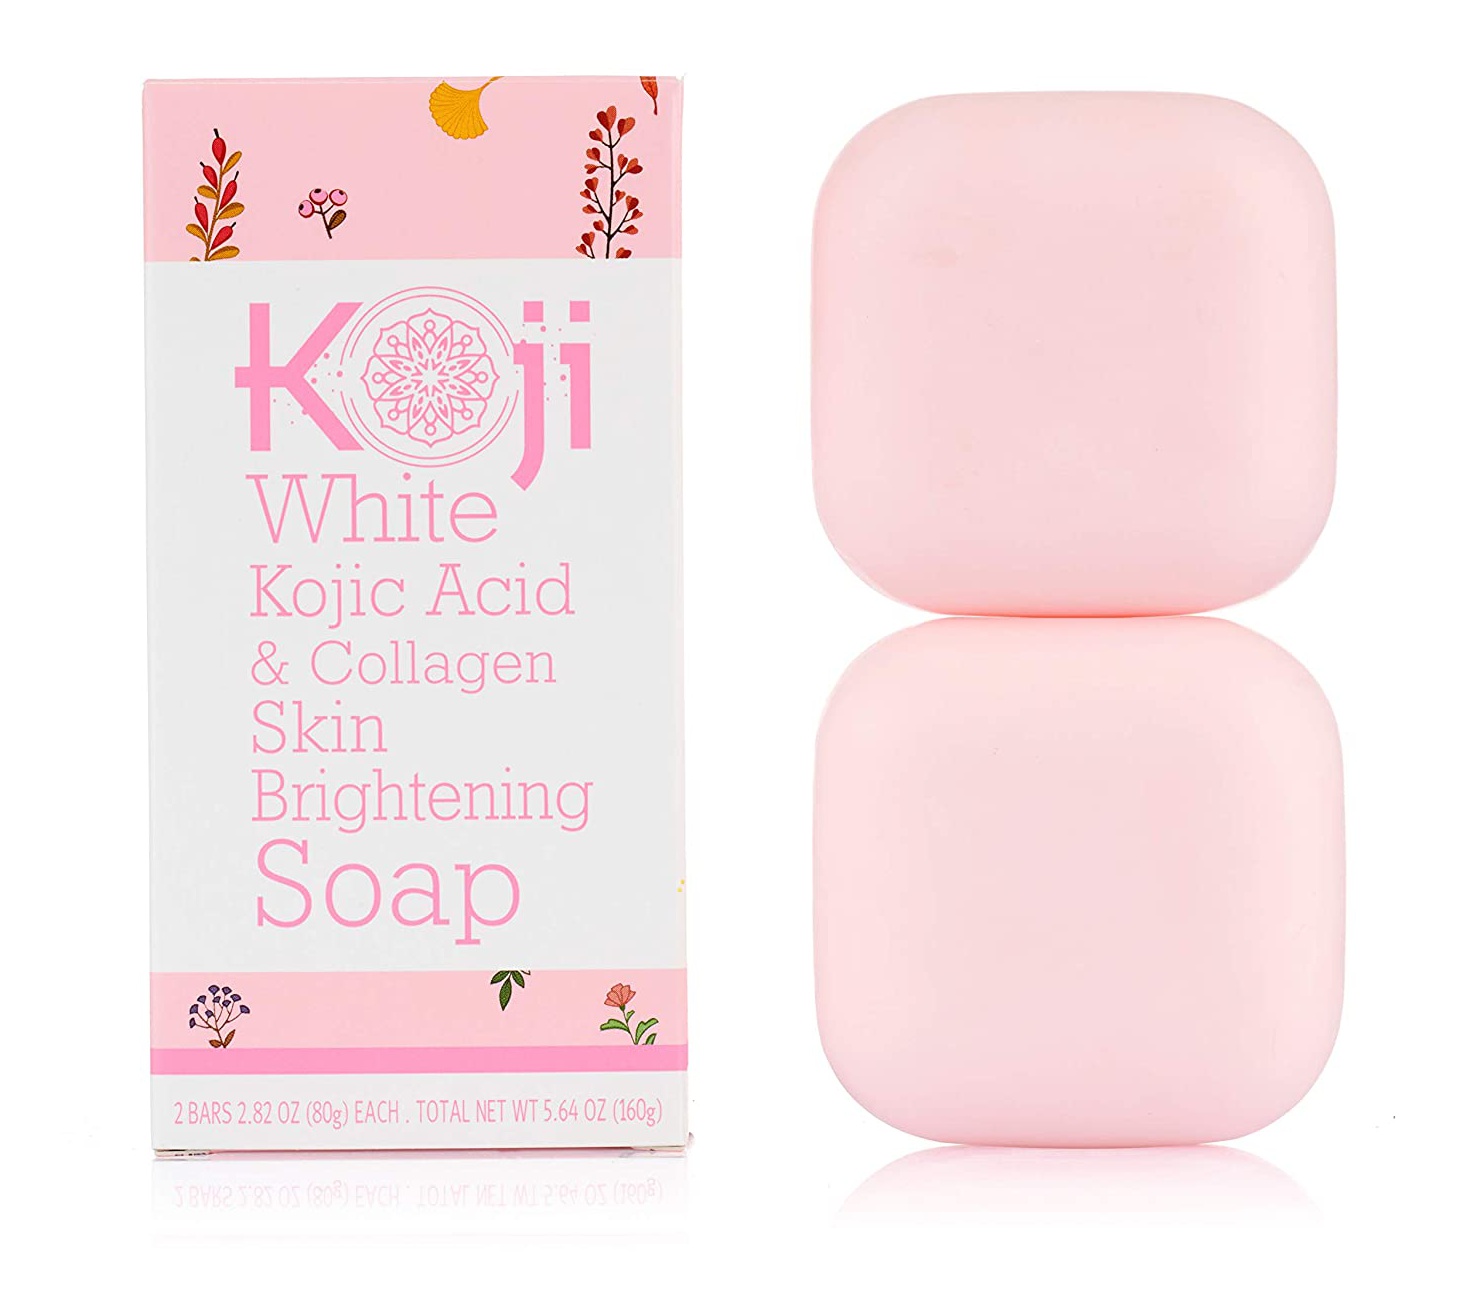 Koji White Kojic Acid & Collagen Skin Brightening Soap